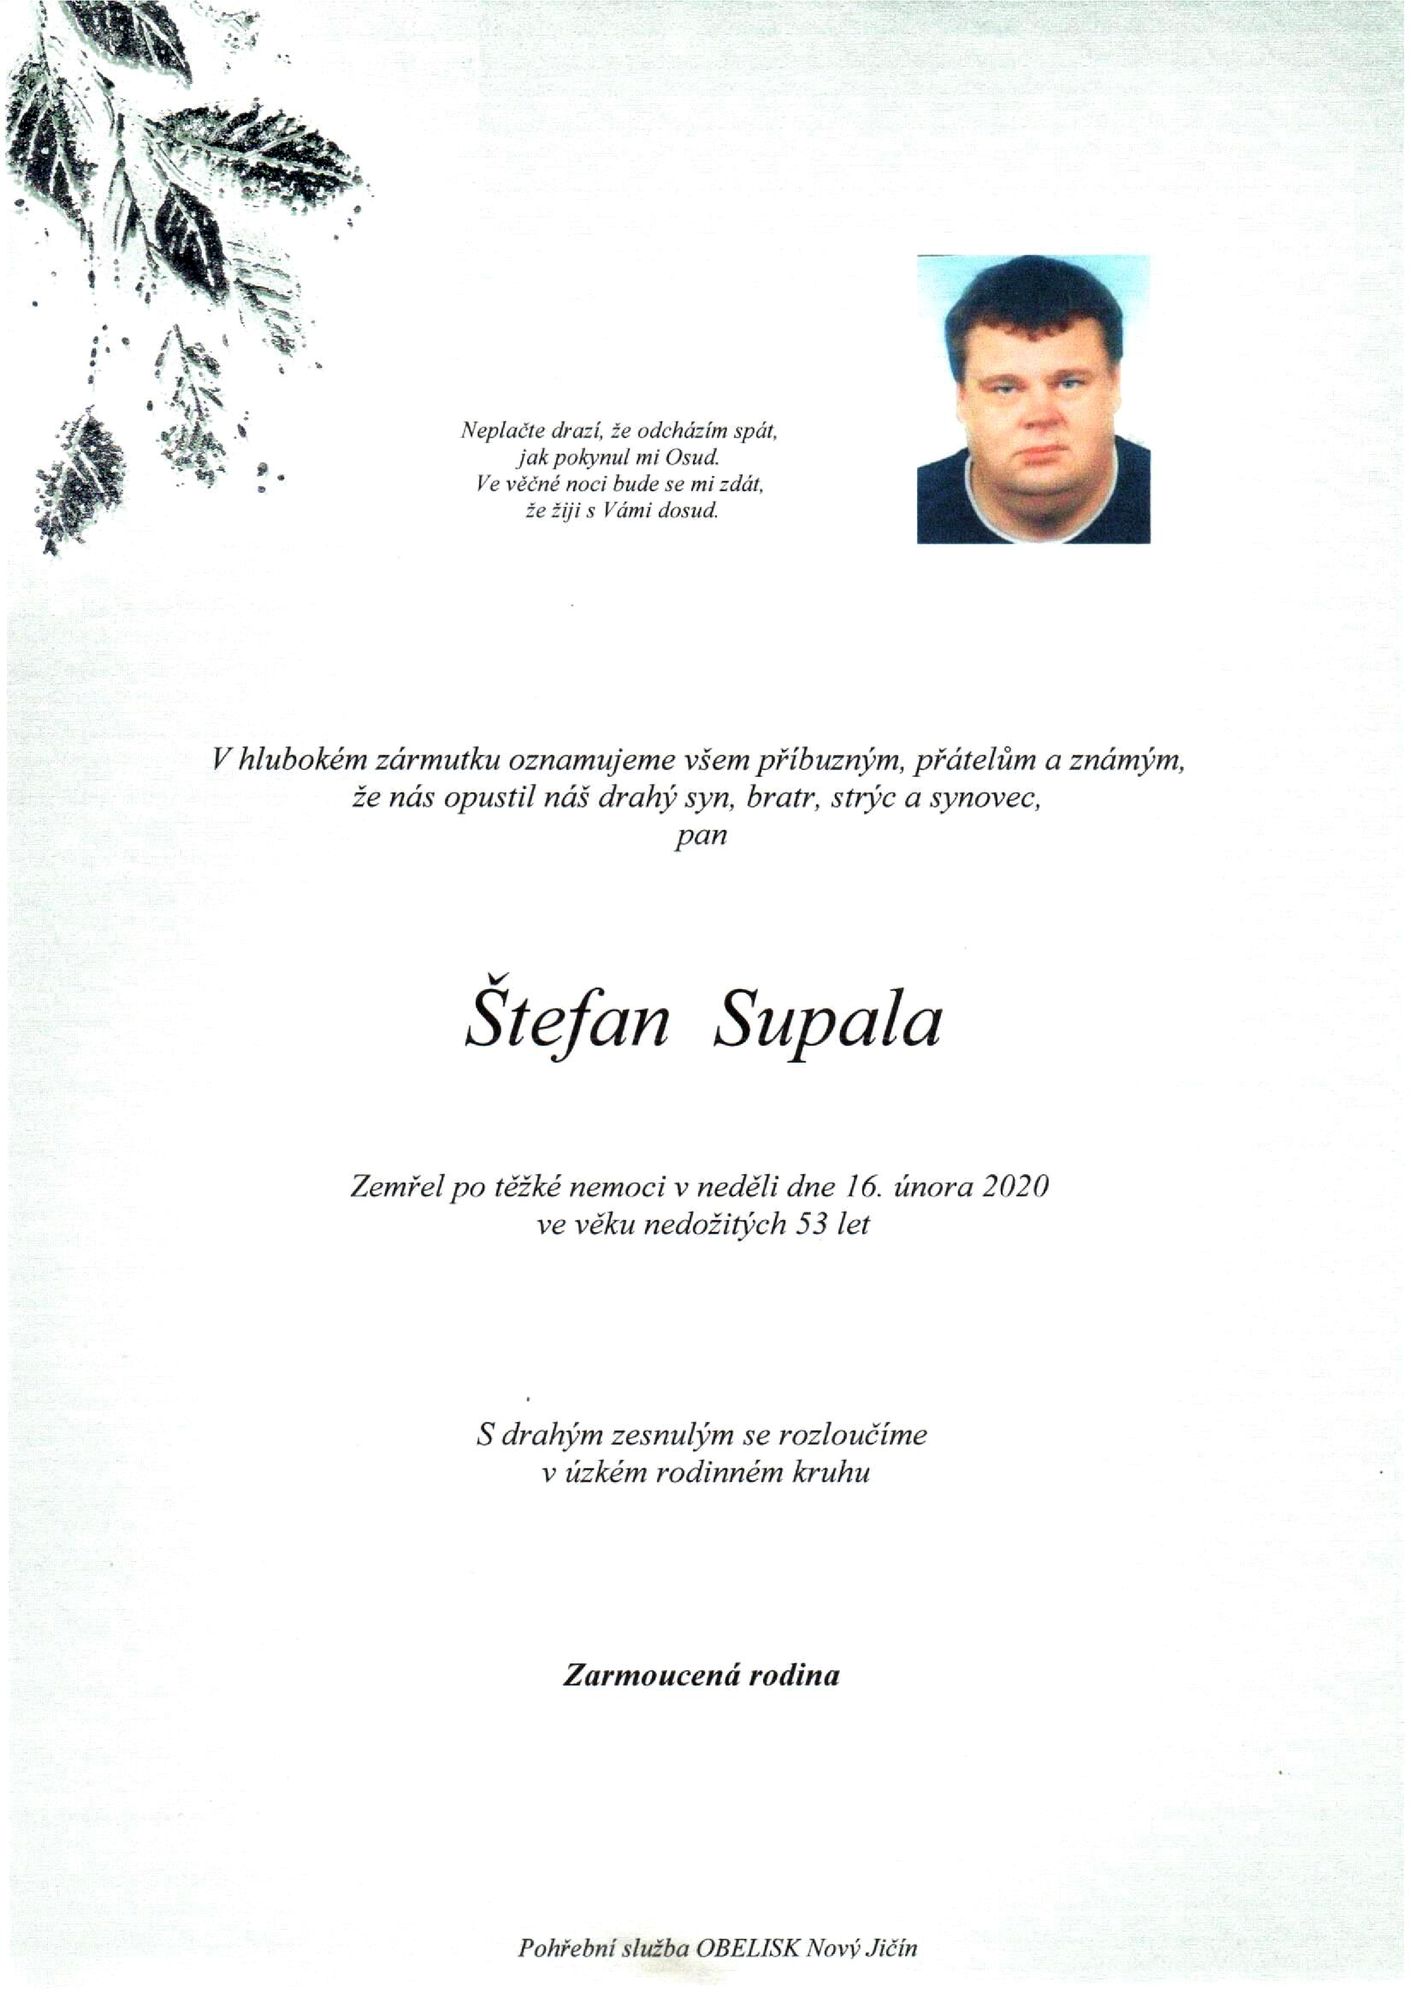 Štefan Supala